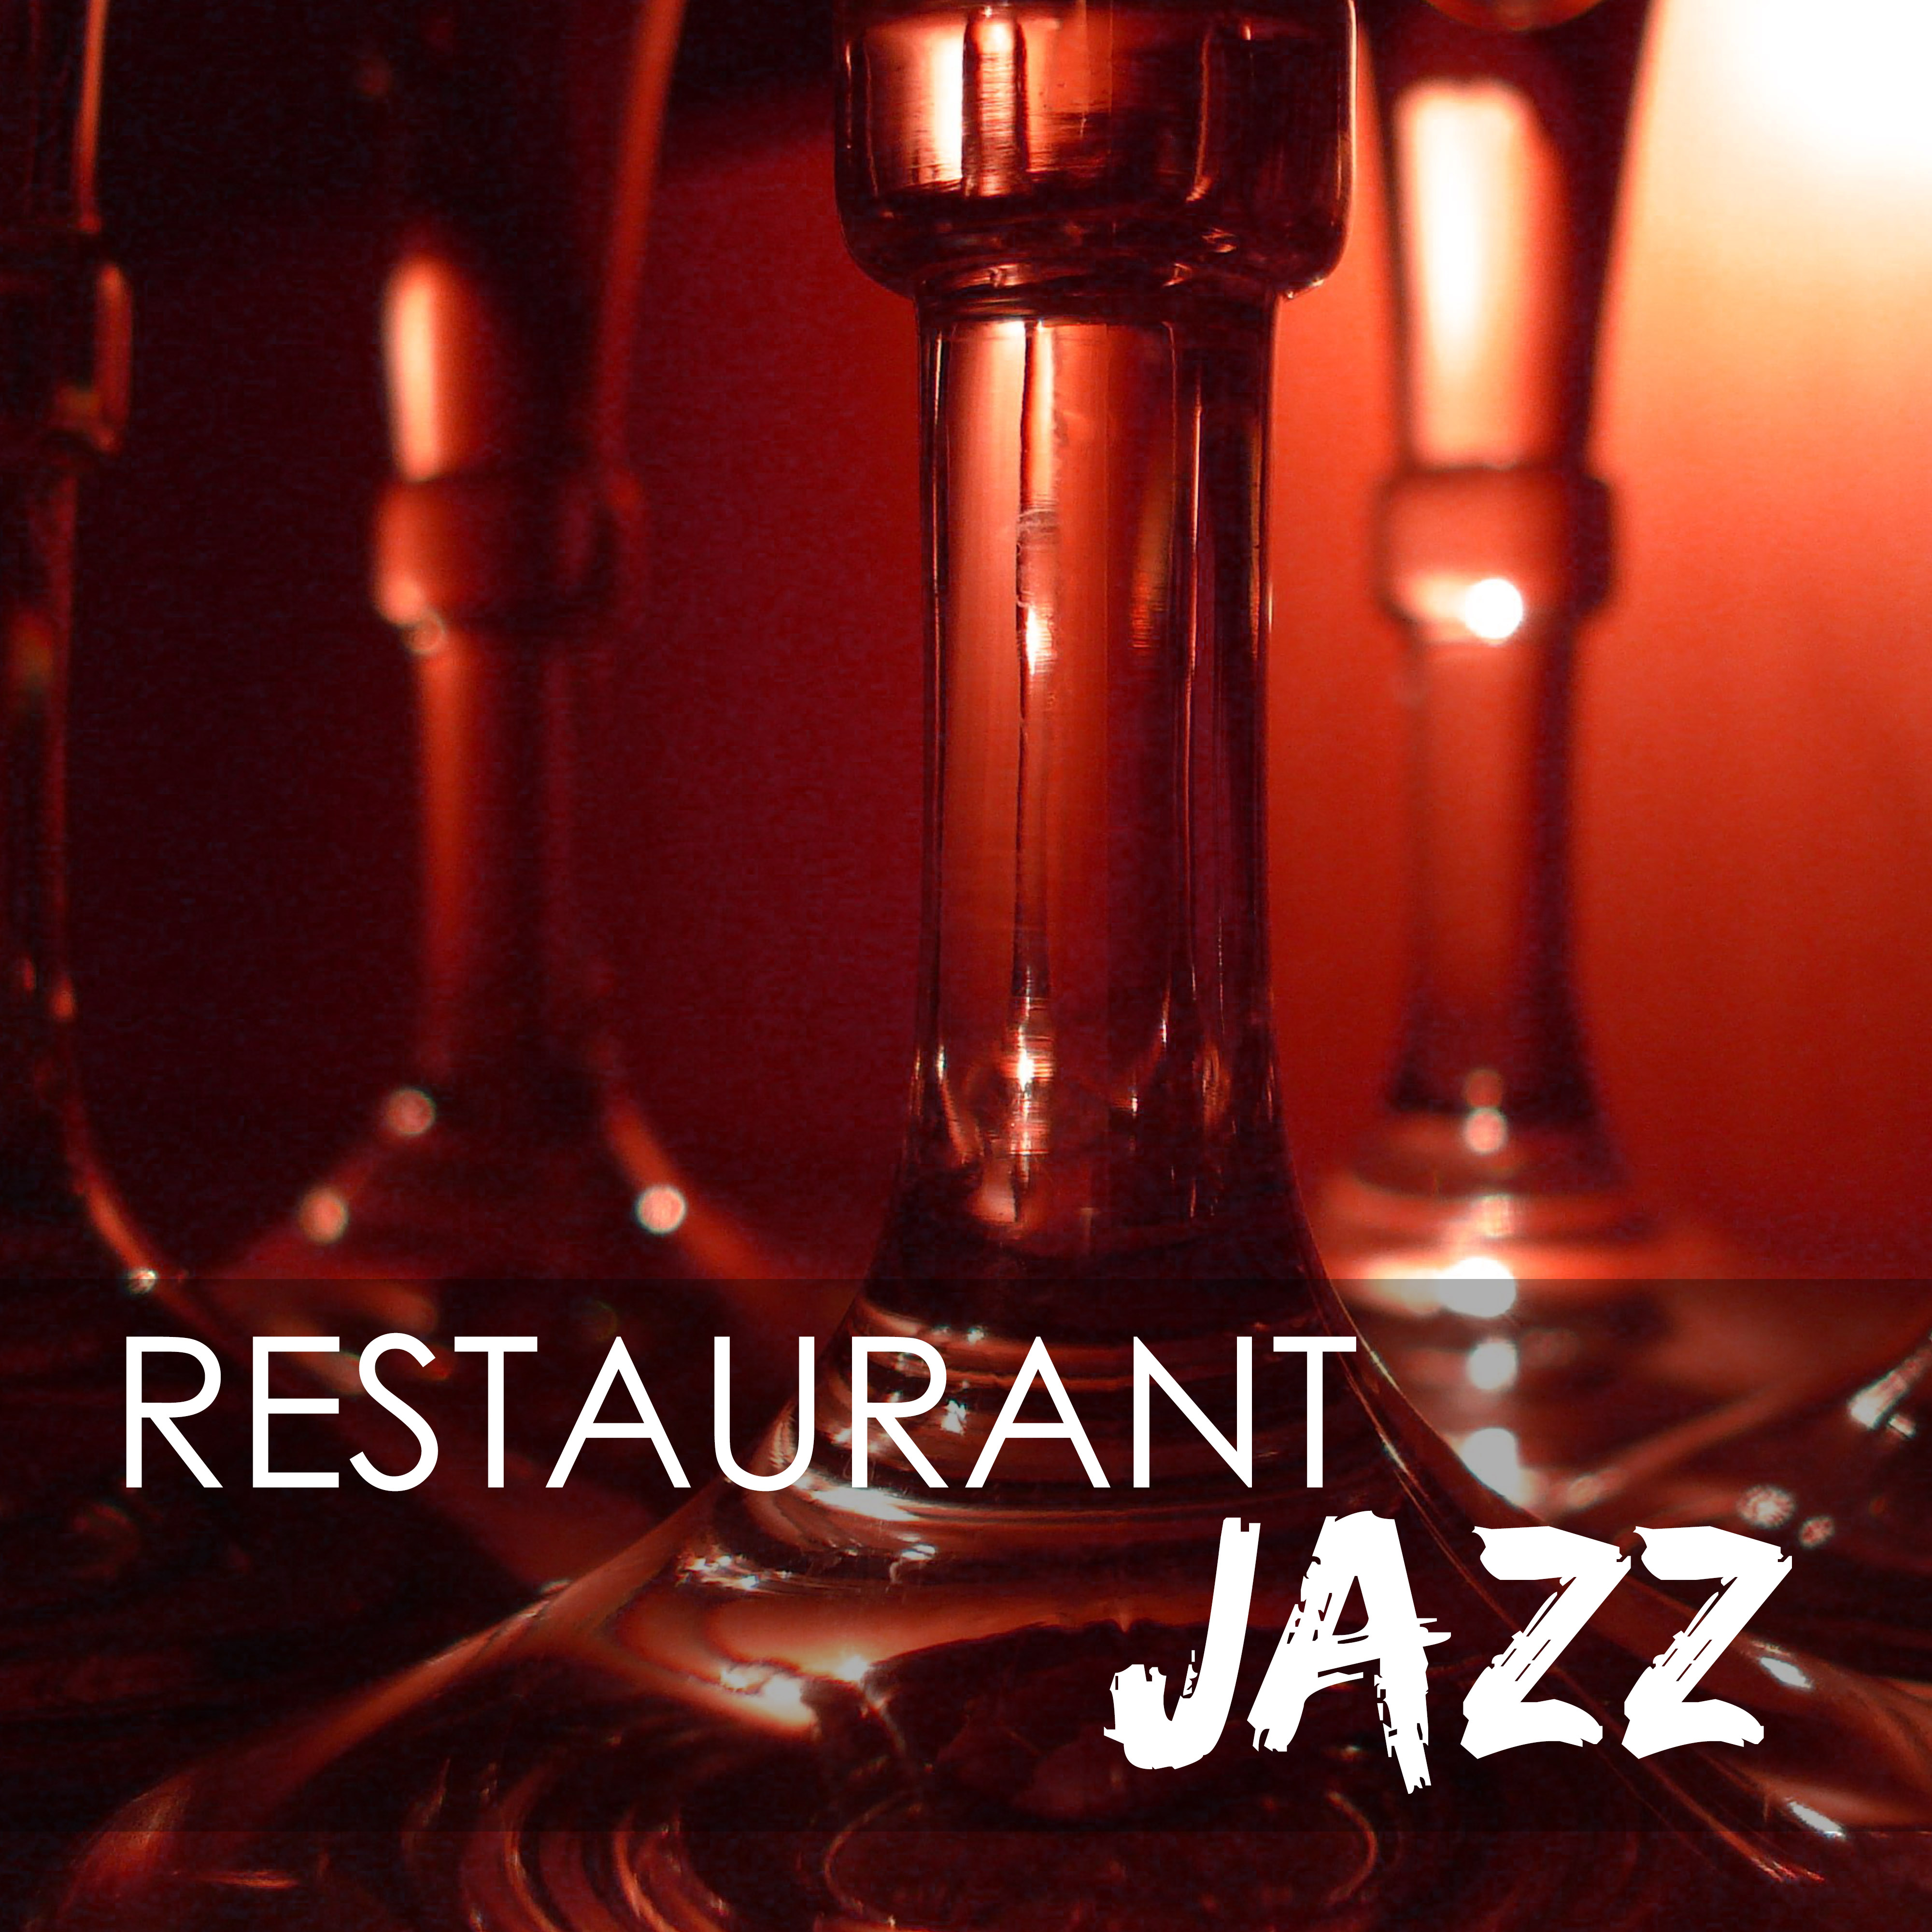 Restaurant Jazz - Dinner Party Sax & Guitar Music, Jazz Instrumental Standards